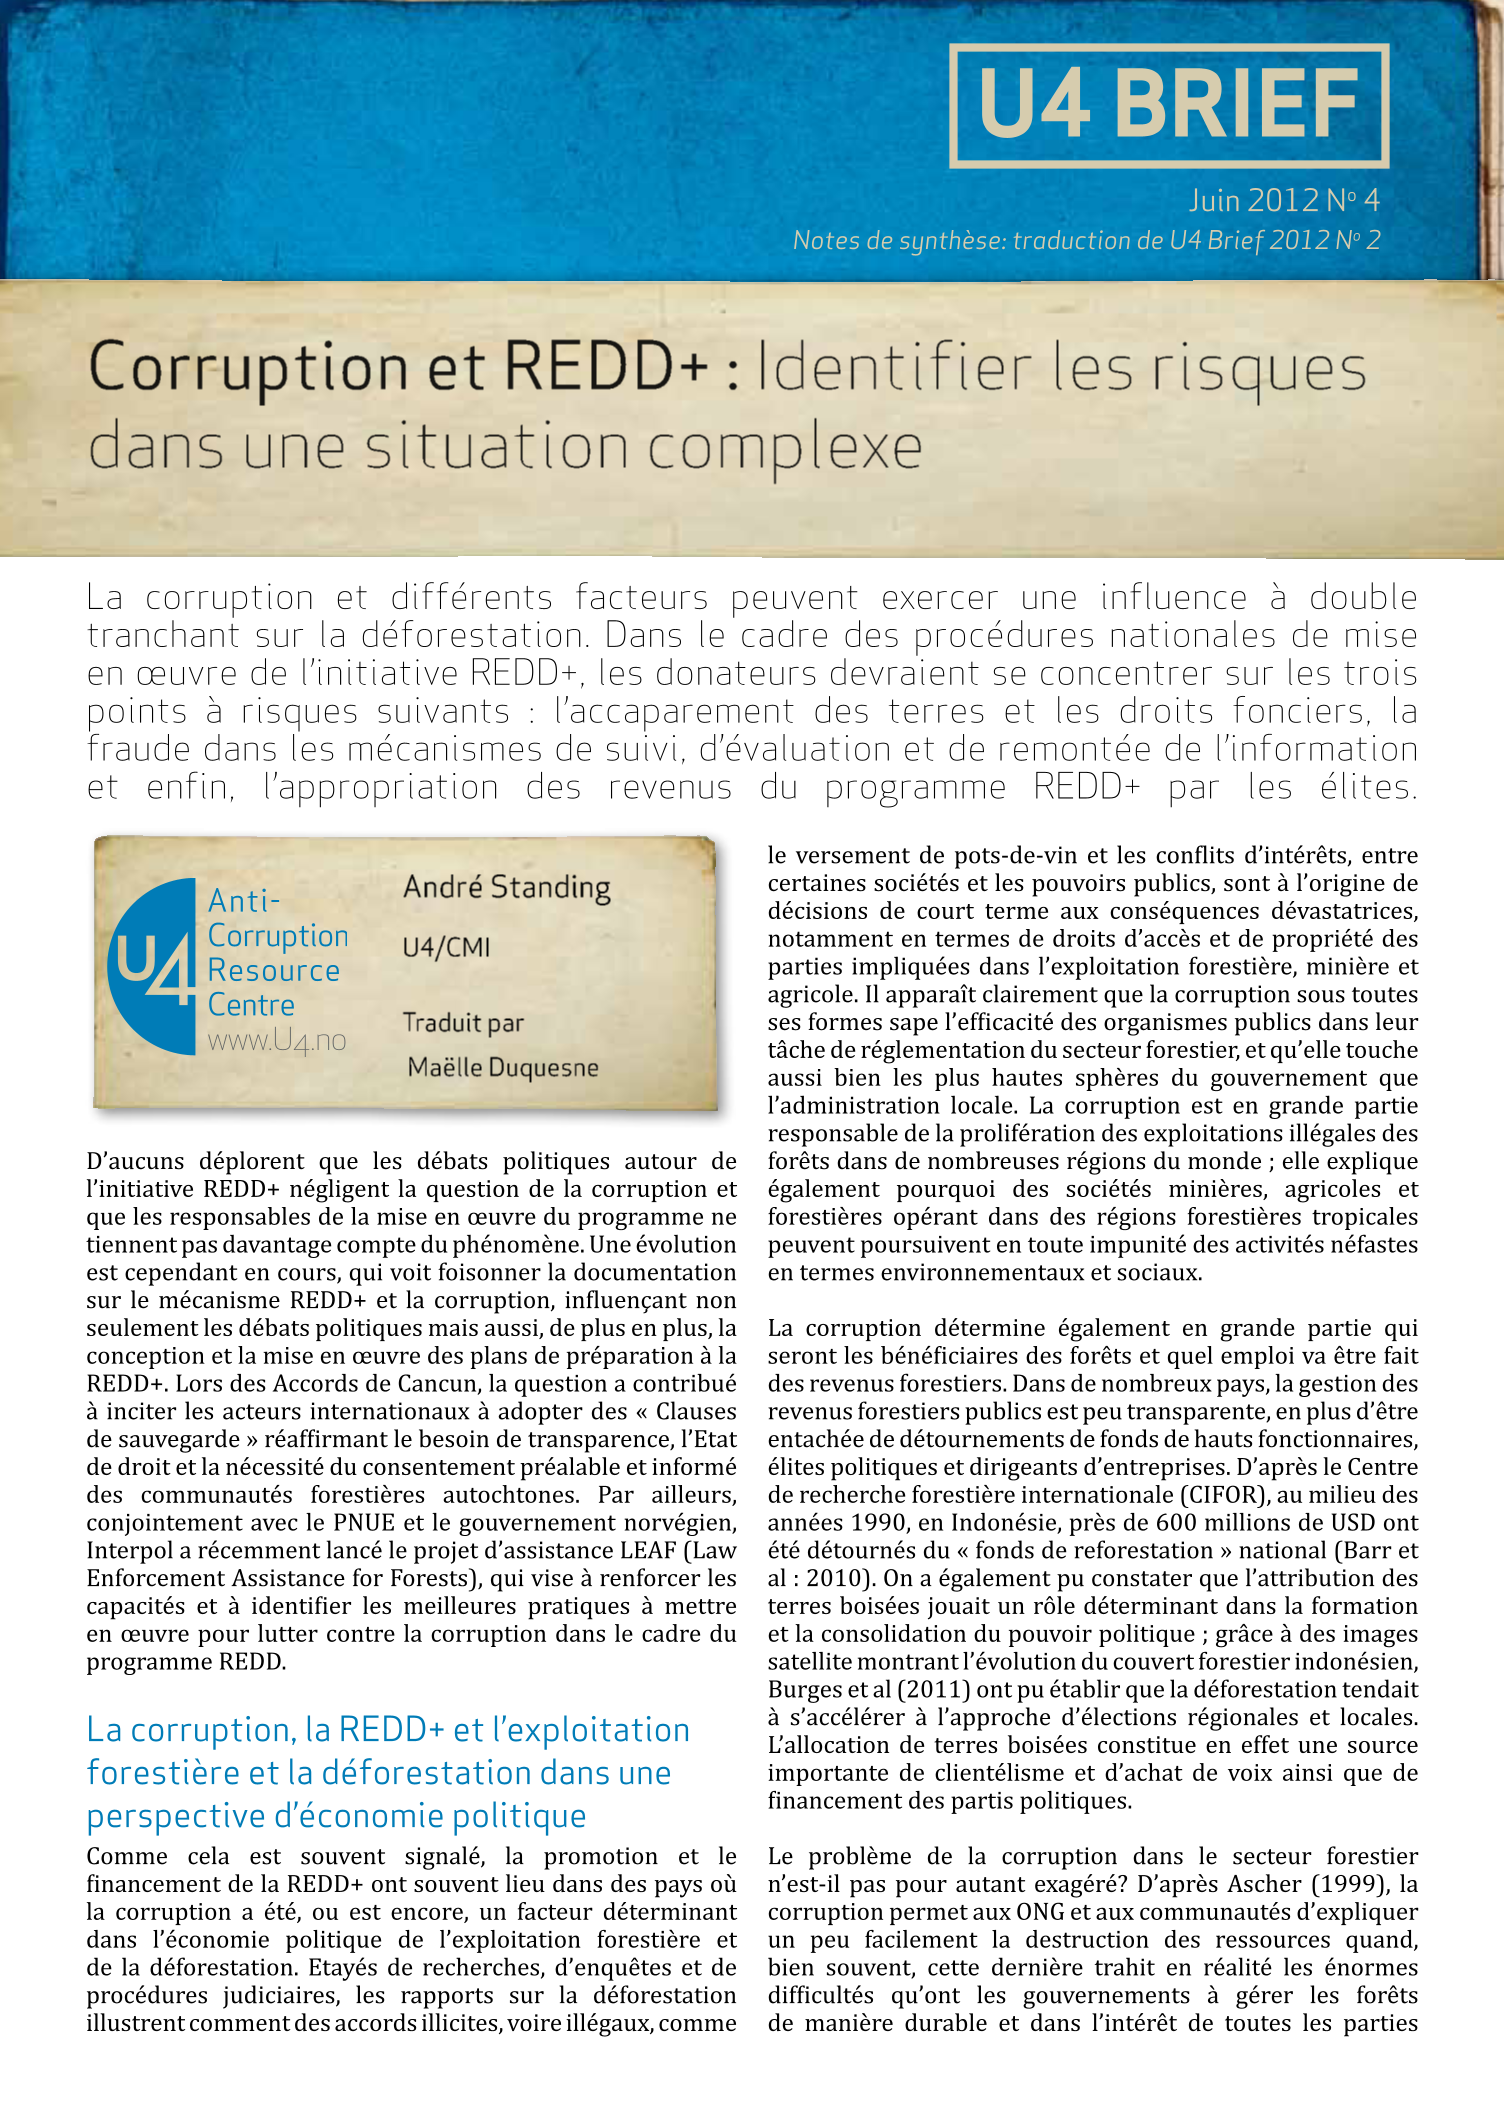 Corruption et REDD+ : Identifier les risques dans une situation complexe